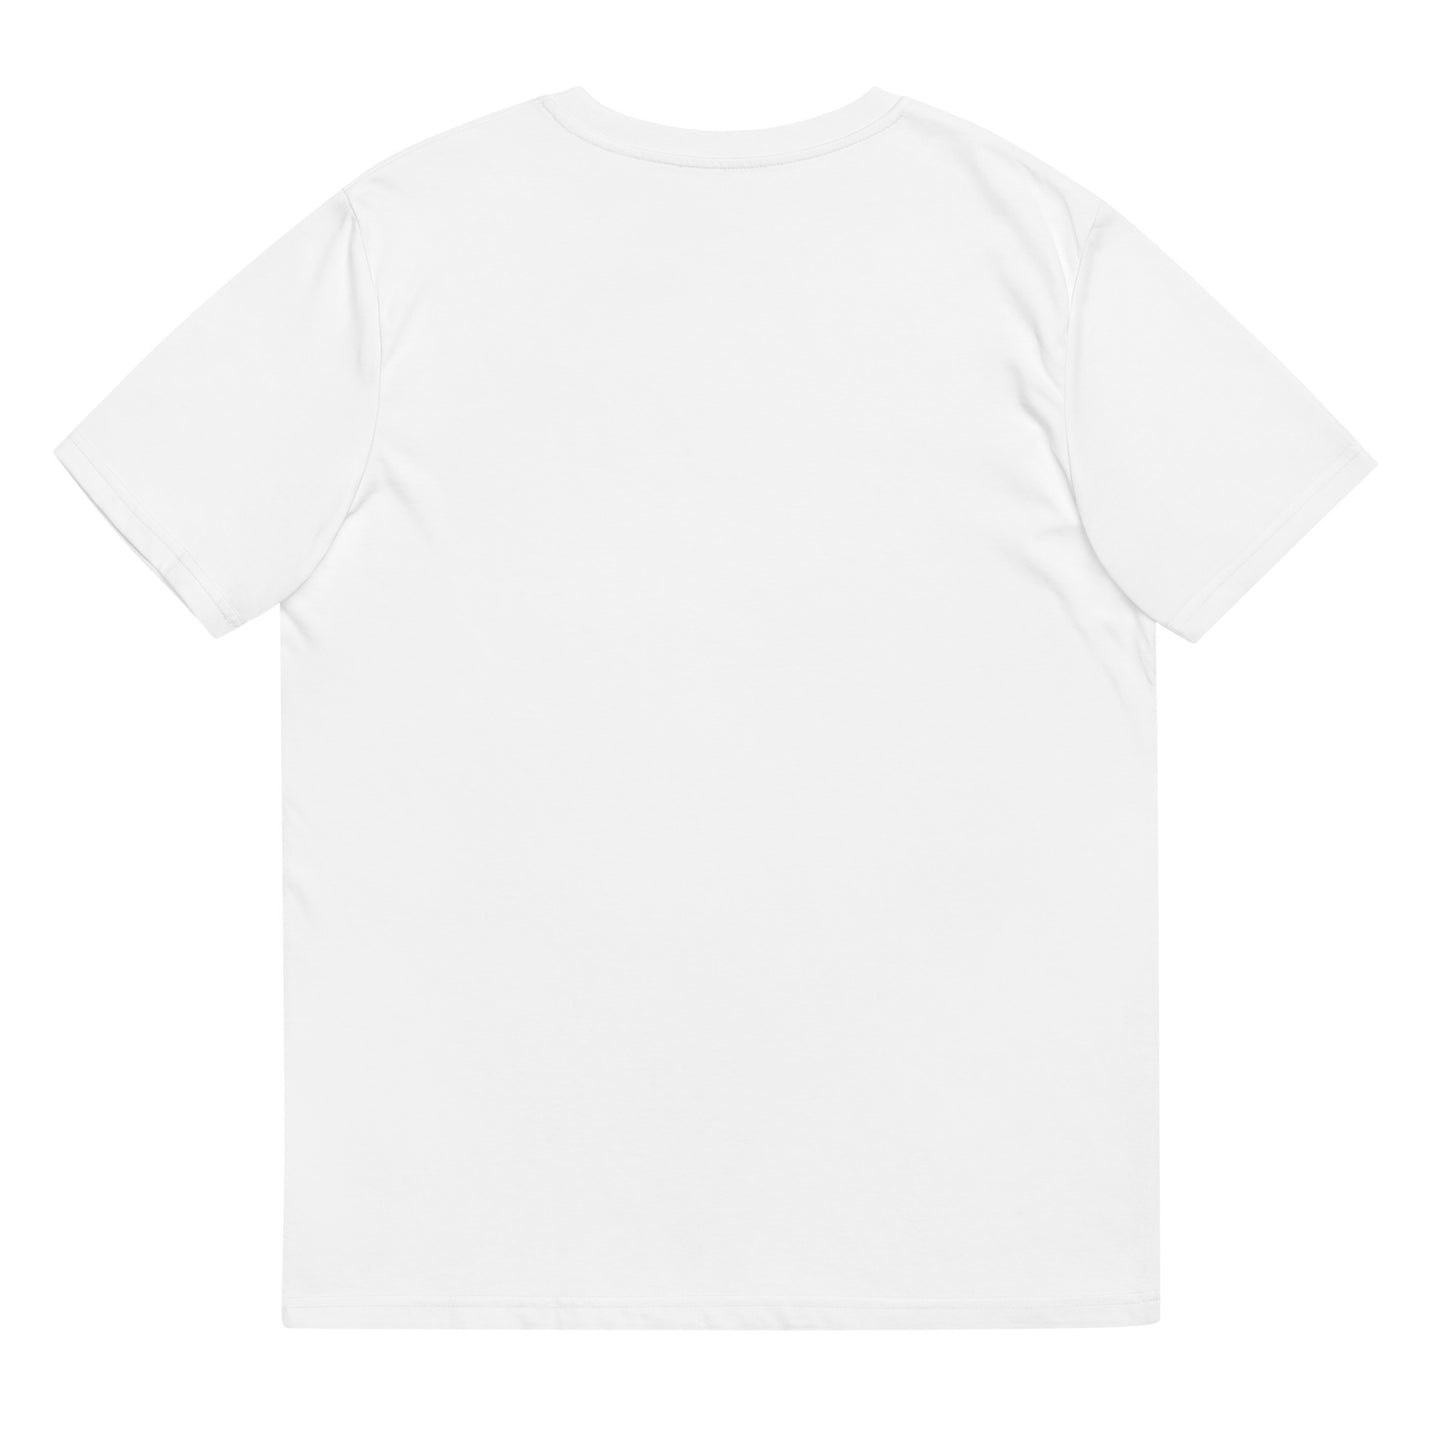 Aléa - T-shirt unisexe en coton biologique